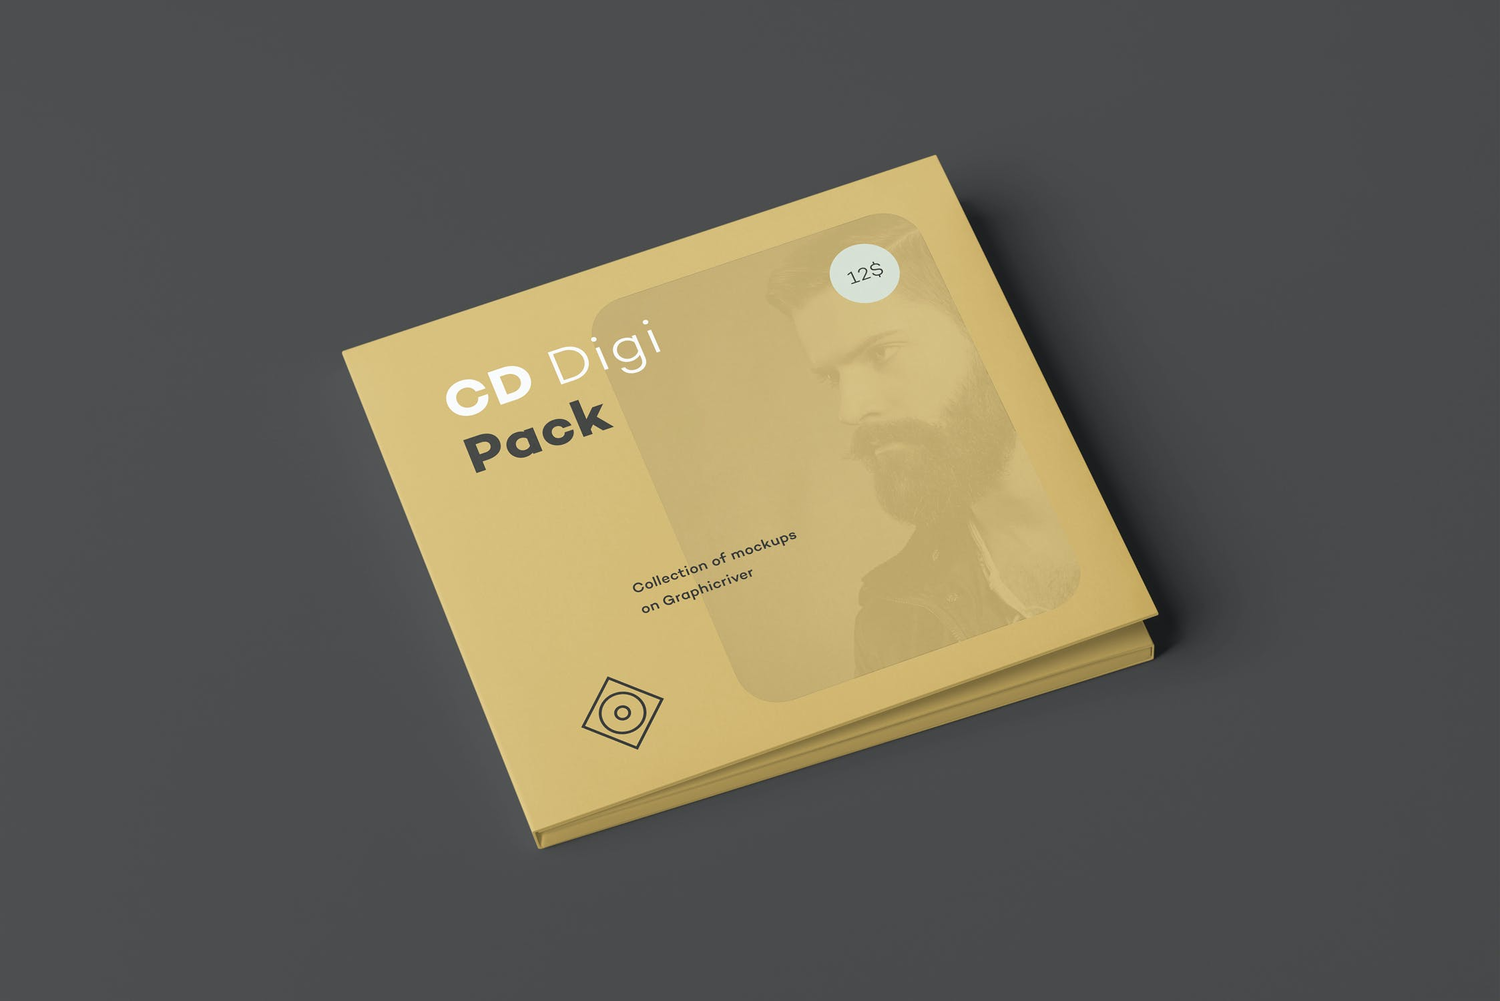 3602 14款光碟软盘CD纸壳包装设计PSD样机 CD Digi Pack Mock-up 3